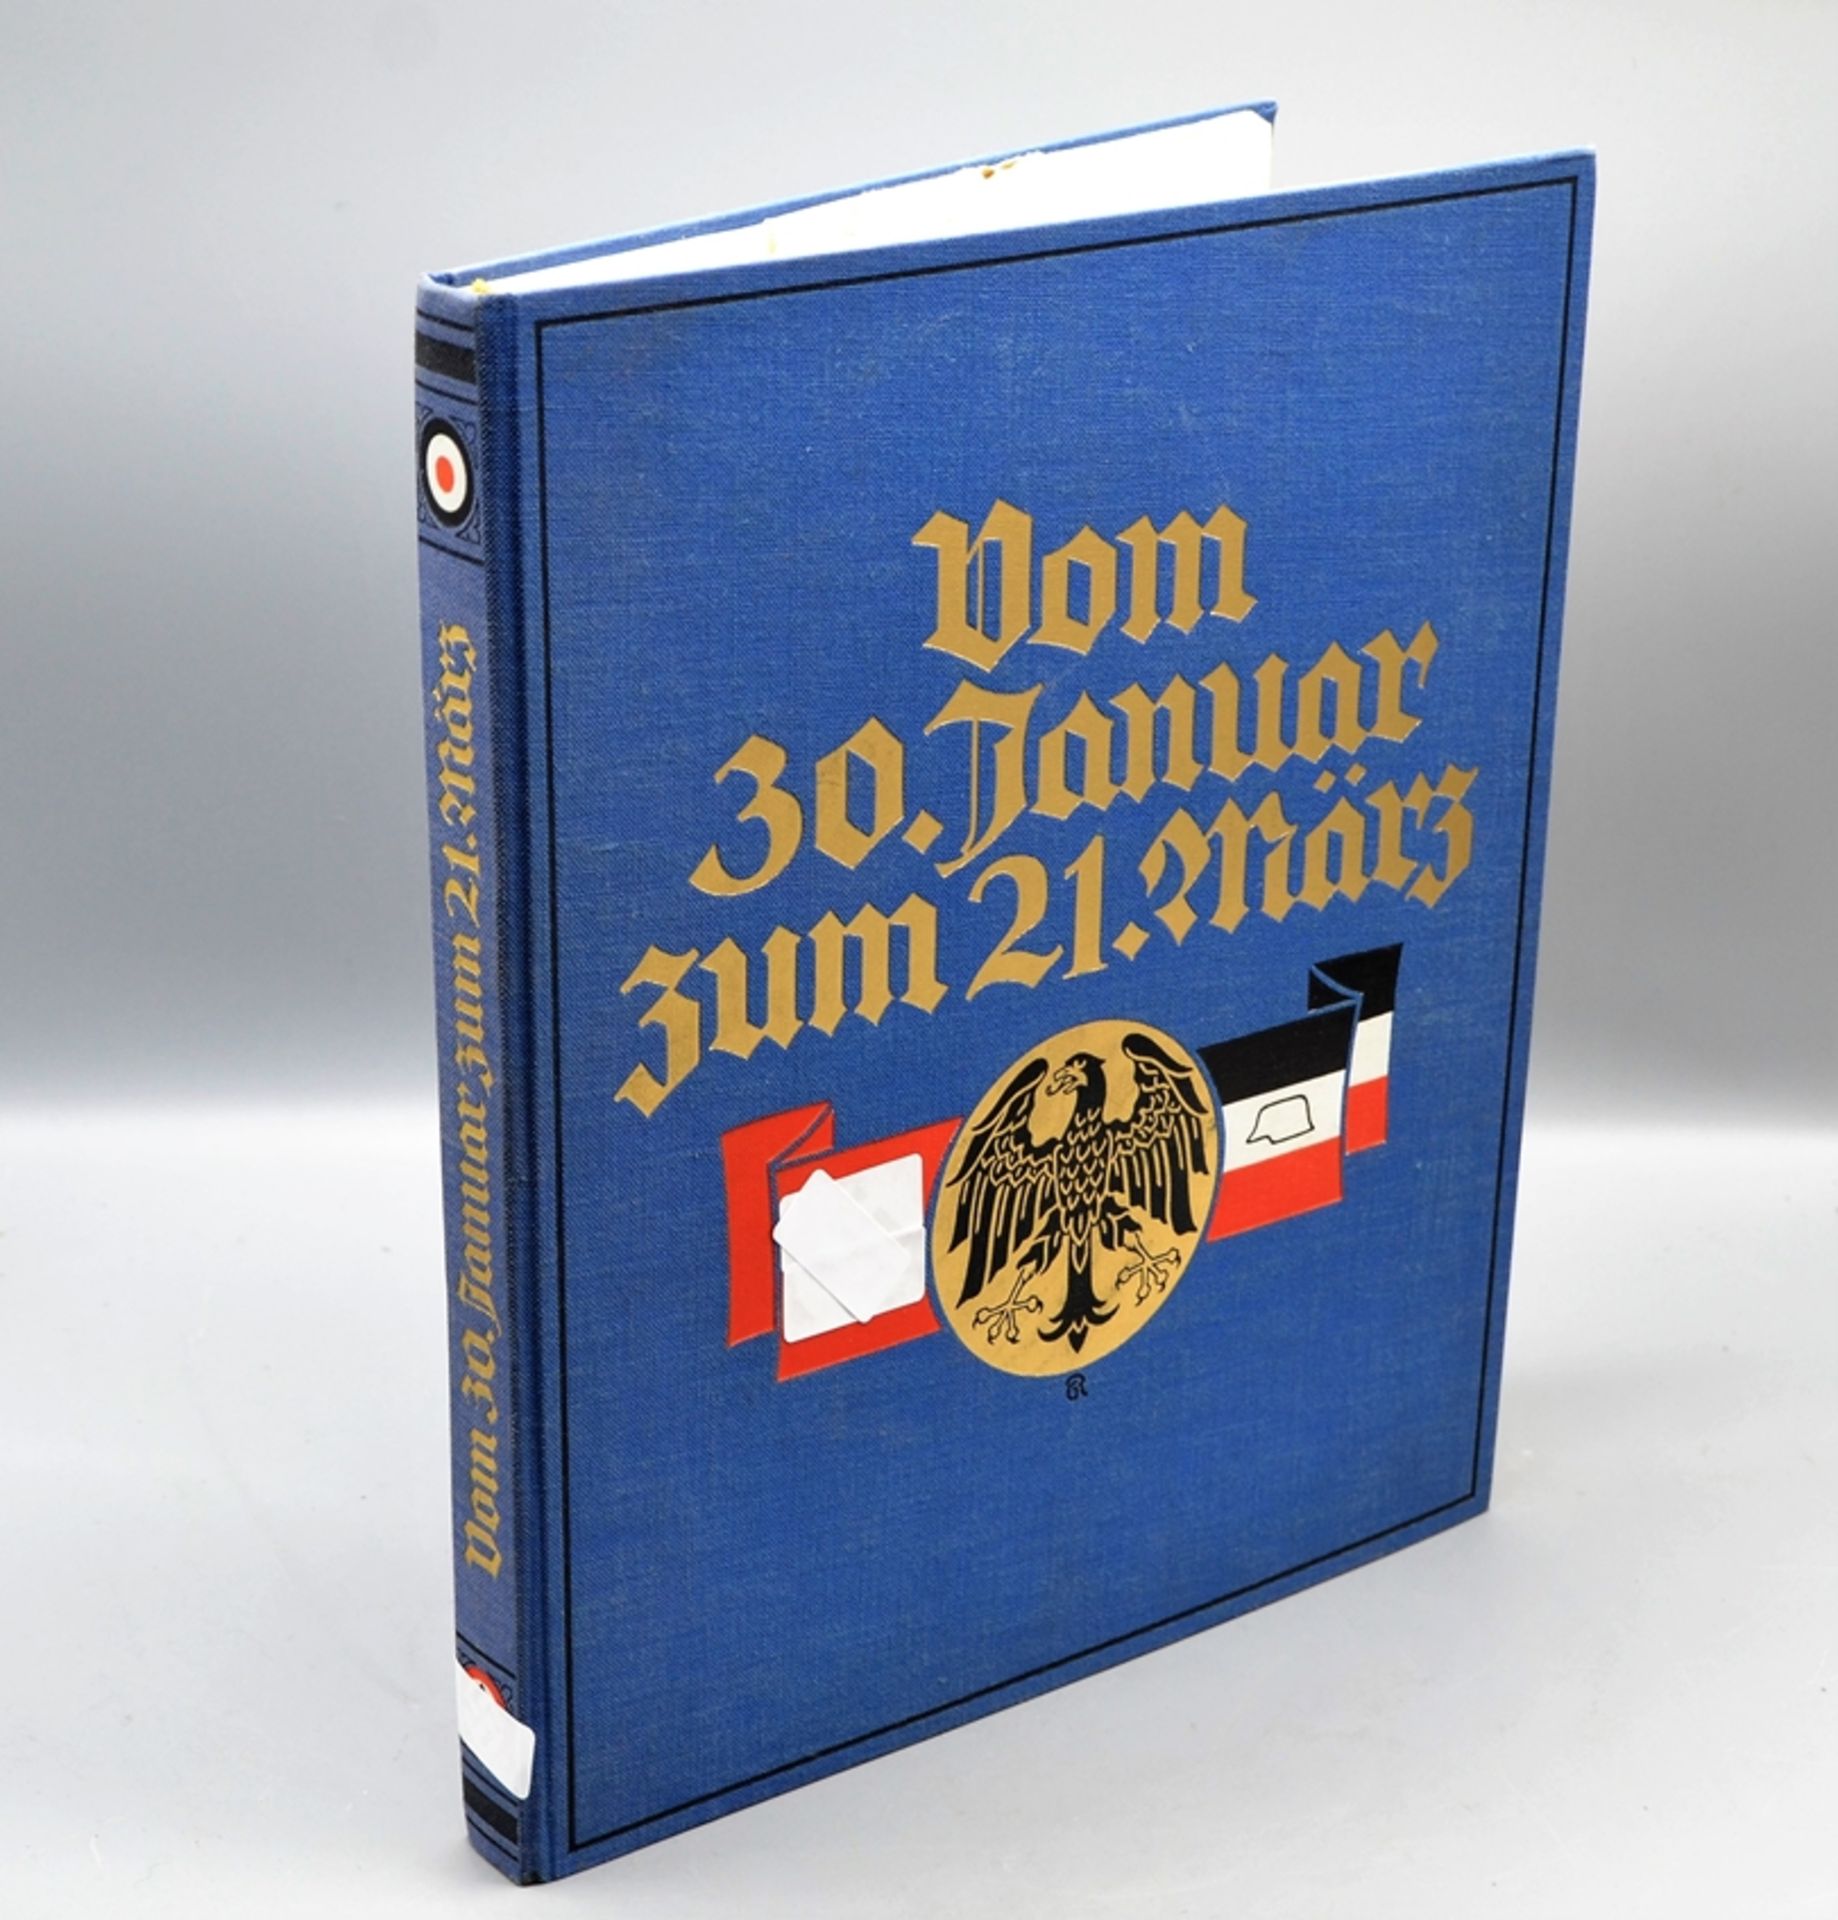 Buch "Vom 30. Januar zum 21. März" Verlag Das neue Deutschland Leipzig 1933, Ausgabe A mit 2 Schal